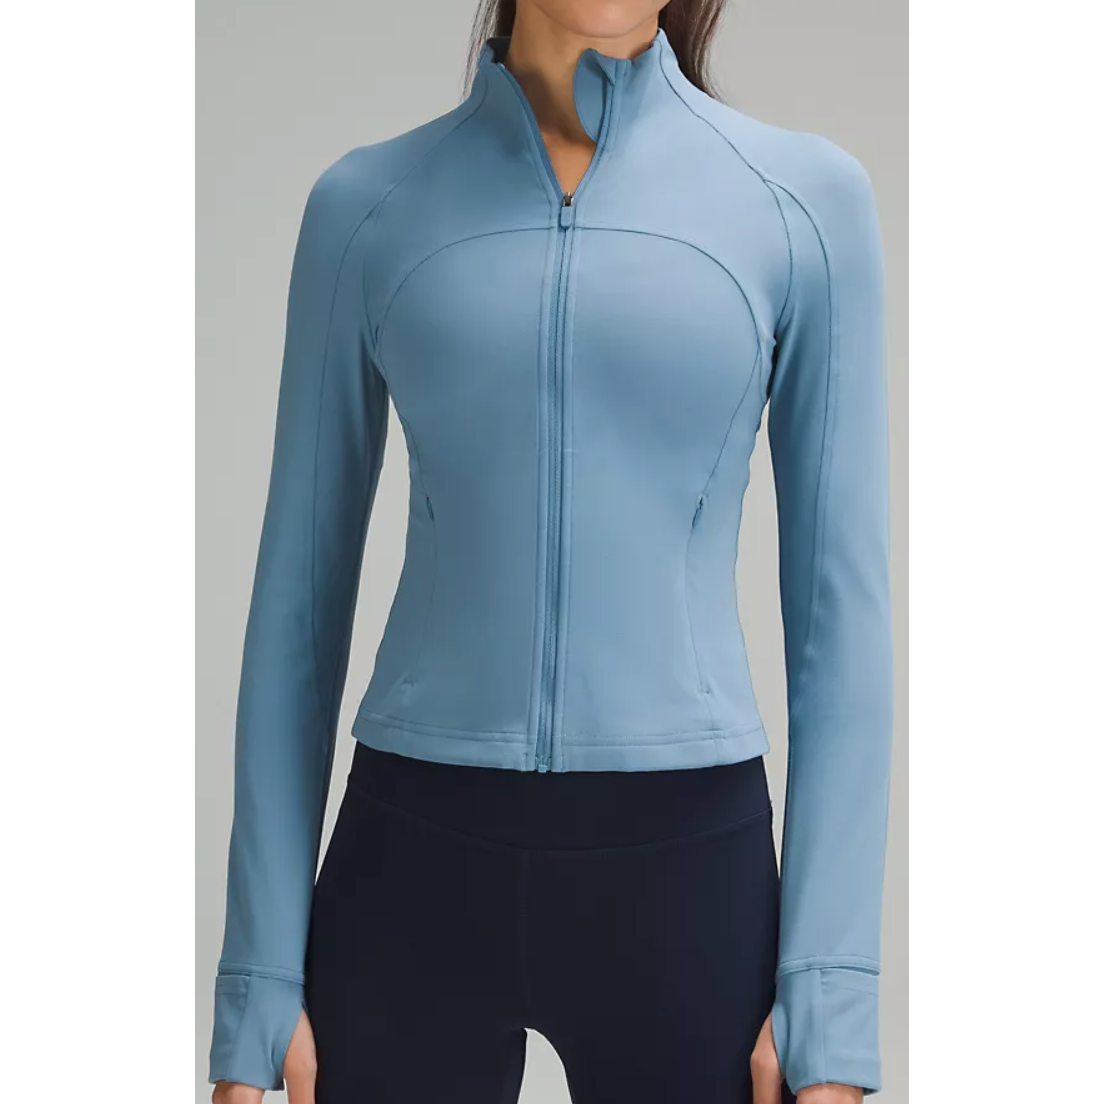 lululemon athletica Define Cropped Jacket Nulu color:storm teal size 4  workout